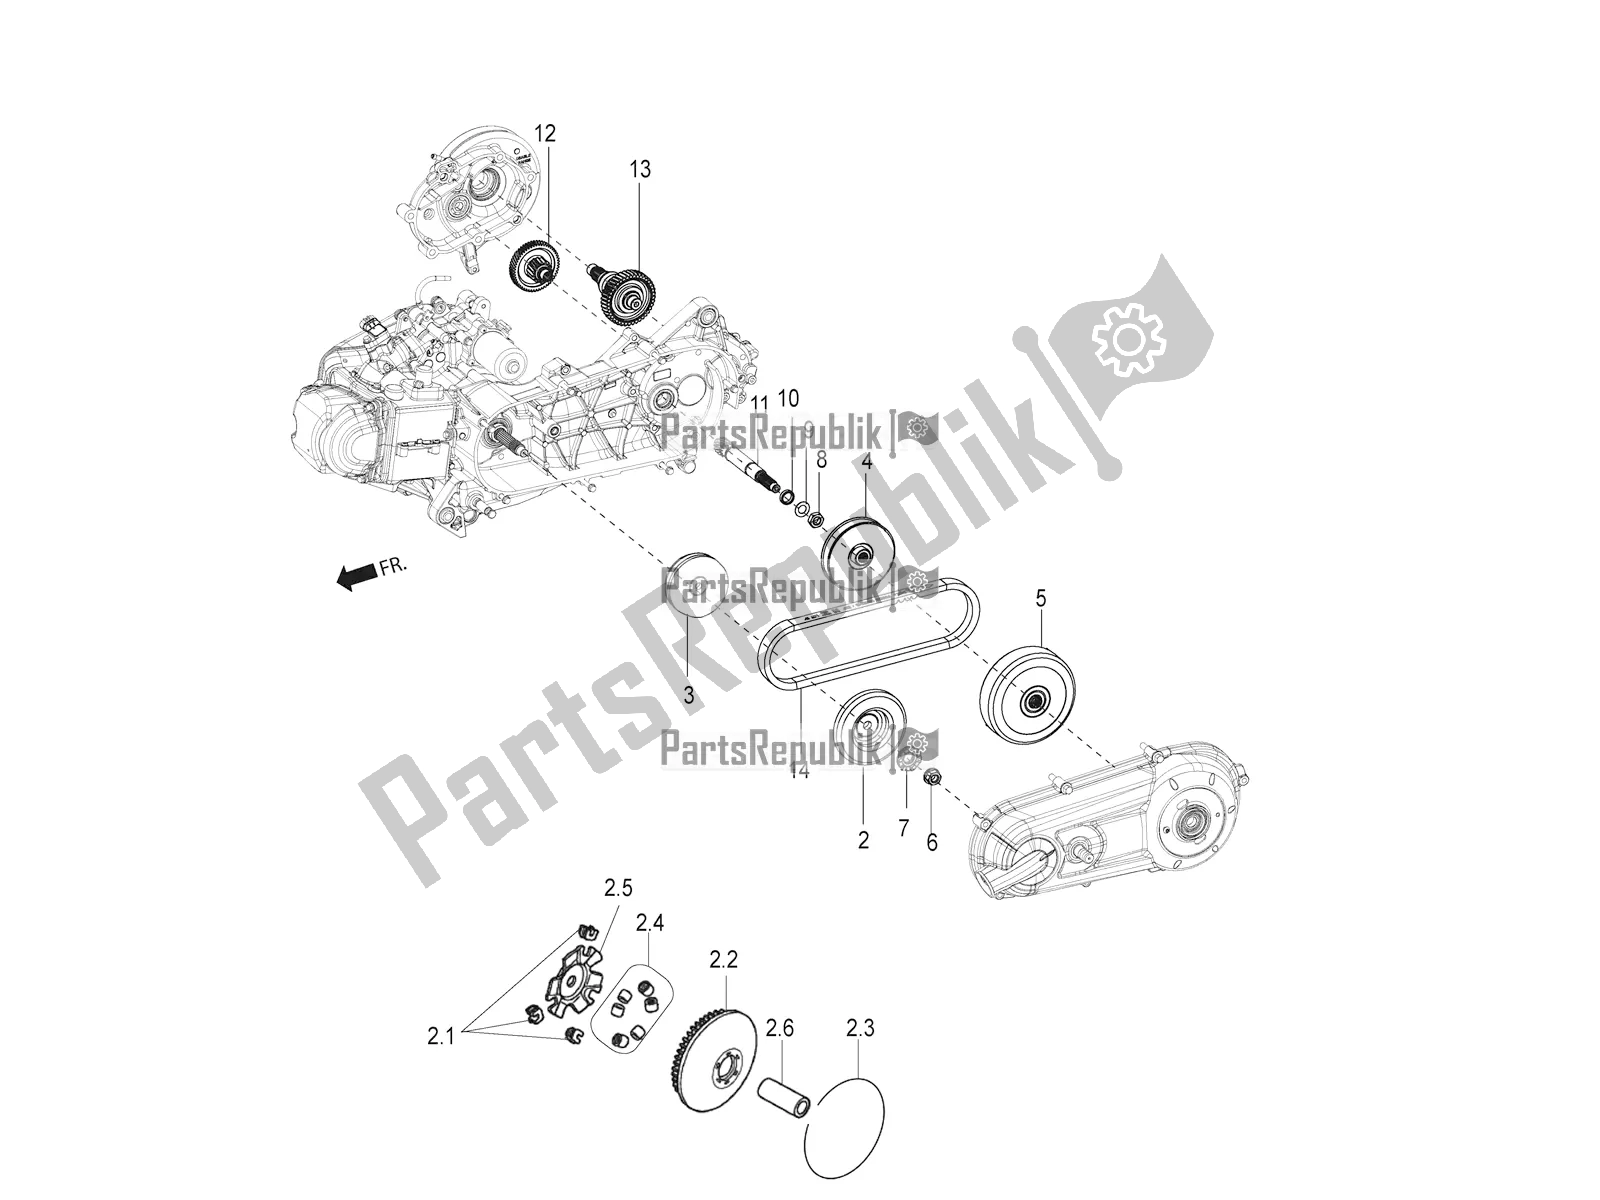 Toutes les pièces pour le Transmission-embrayage du Aprilia SR Motard 150 ABS Racer Carb. Latam 2019